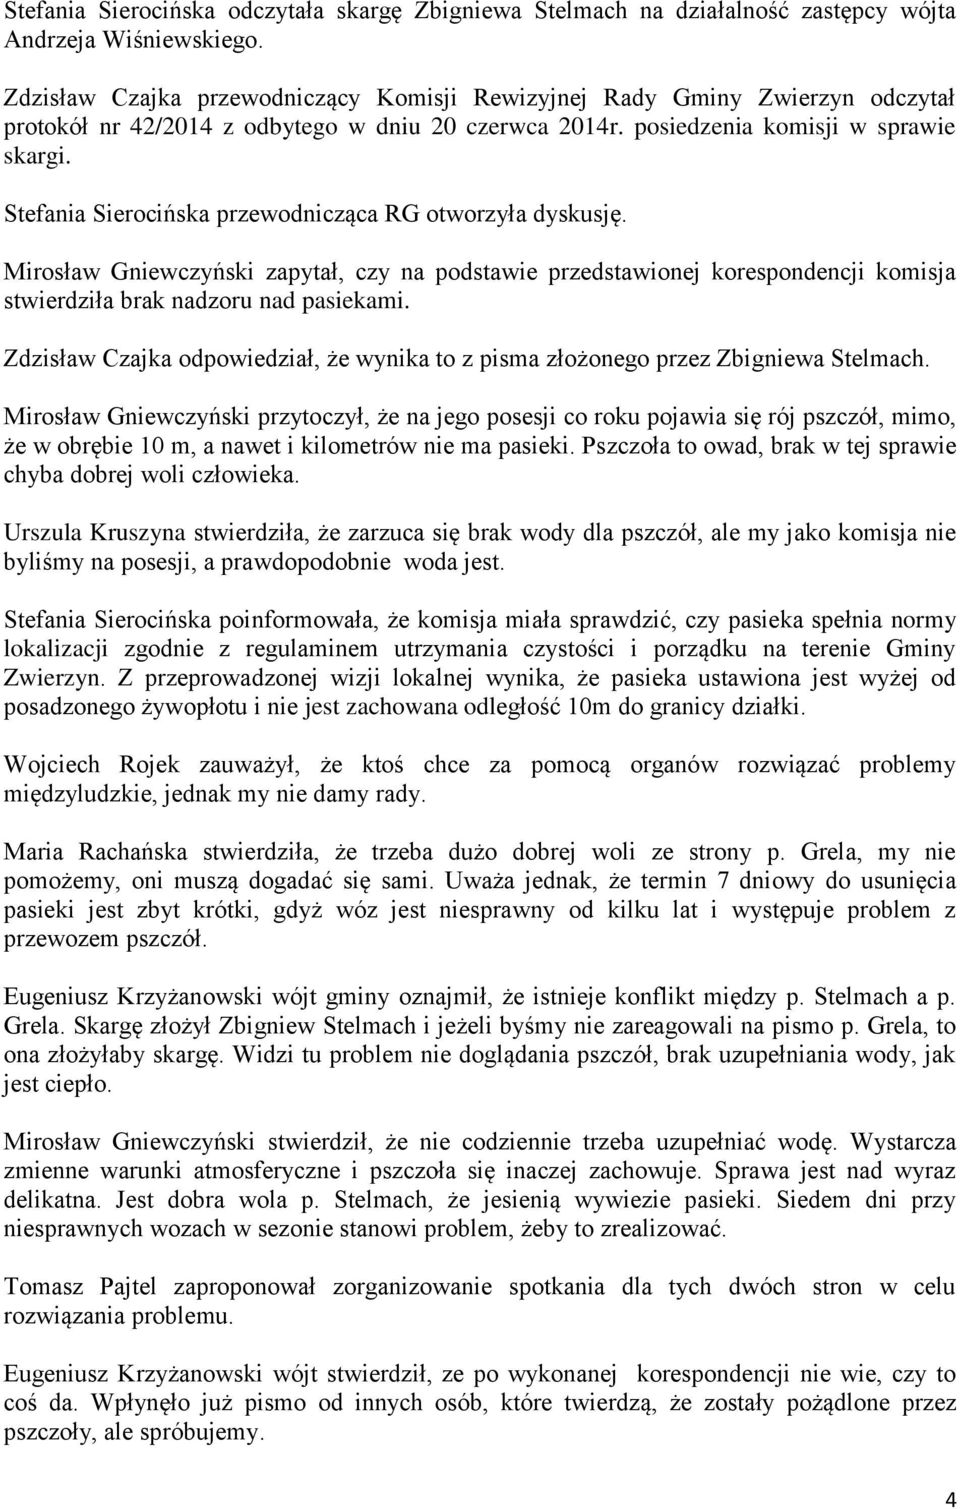 Stefania Sierocińska przewodnicząca RG otworzyła dyskusję. Mirosław Gniewczyński zapytał, czy na podstawie przedstawionej korespondencji komisja stwierdziła brak nadzoru nad pasiekami.